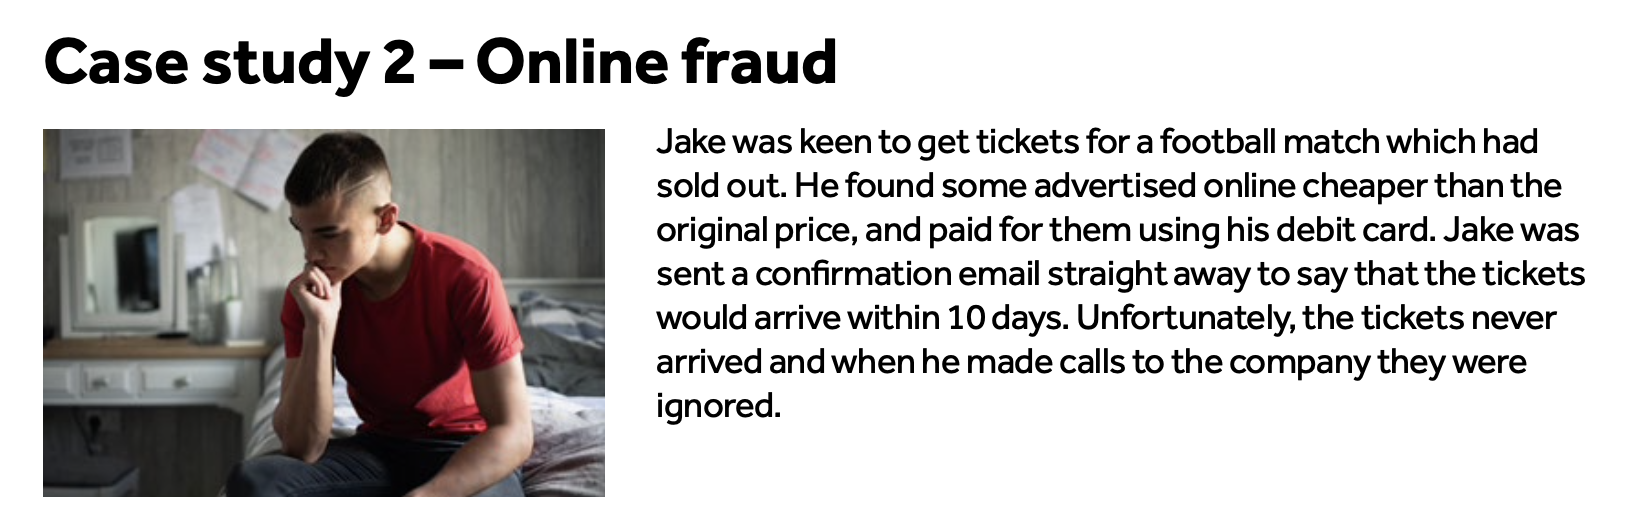 Jake - Online Fraud